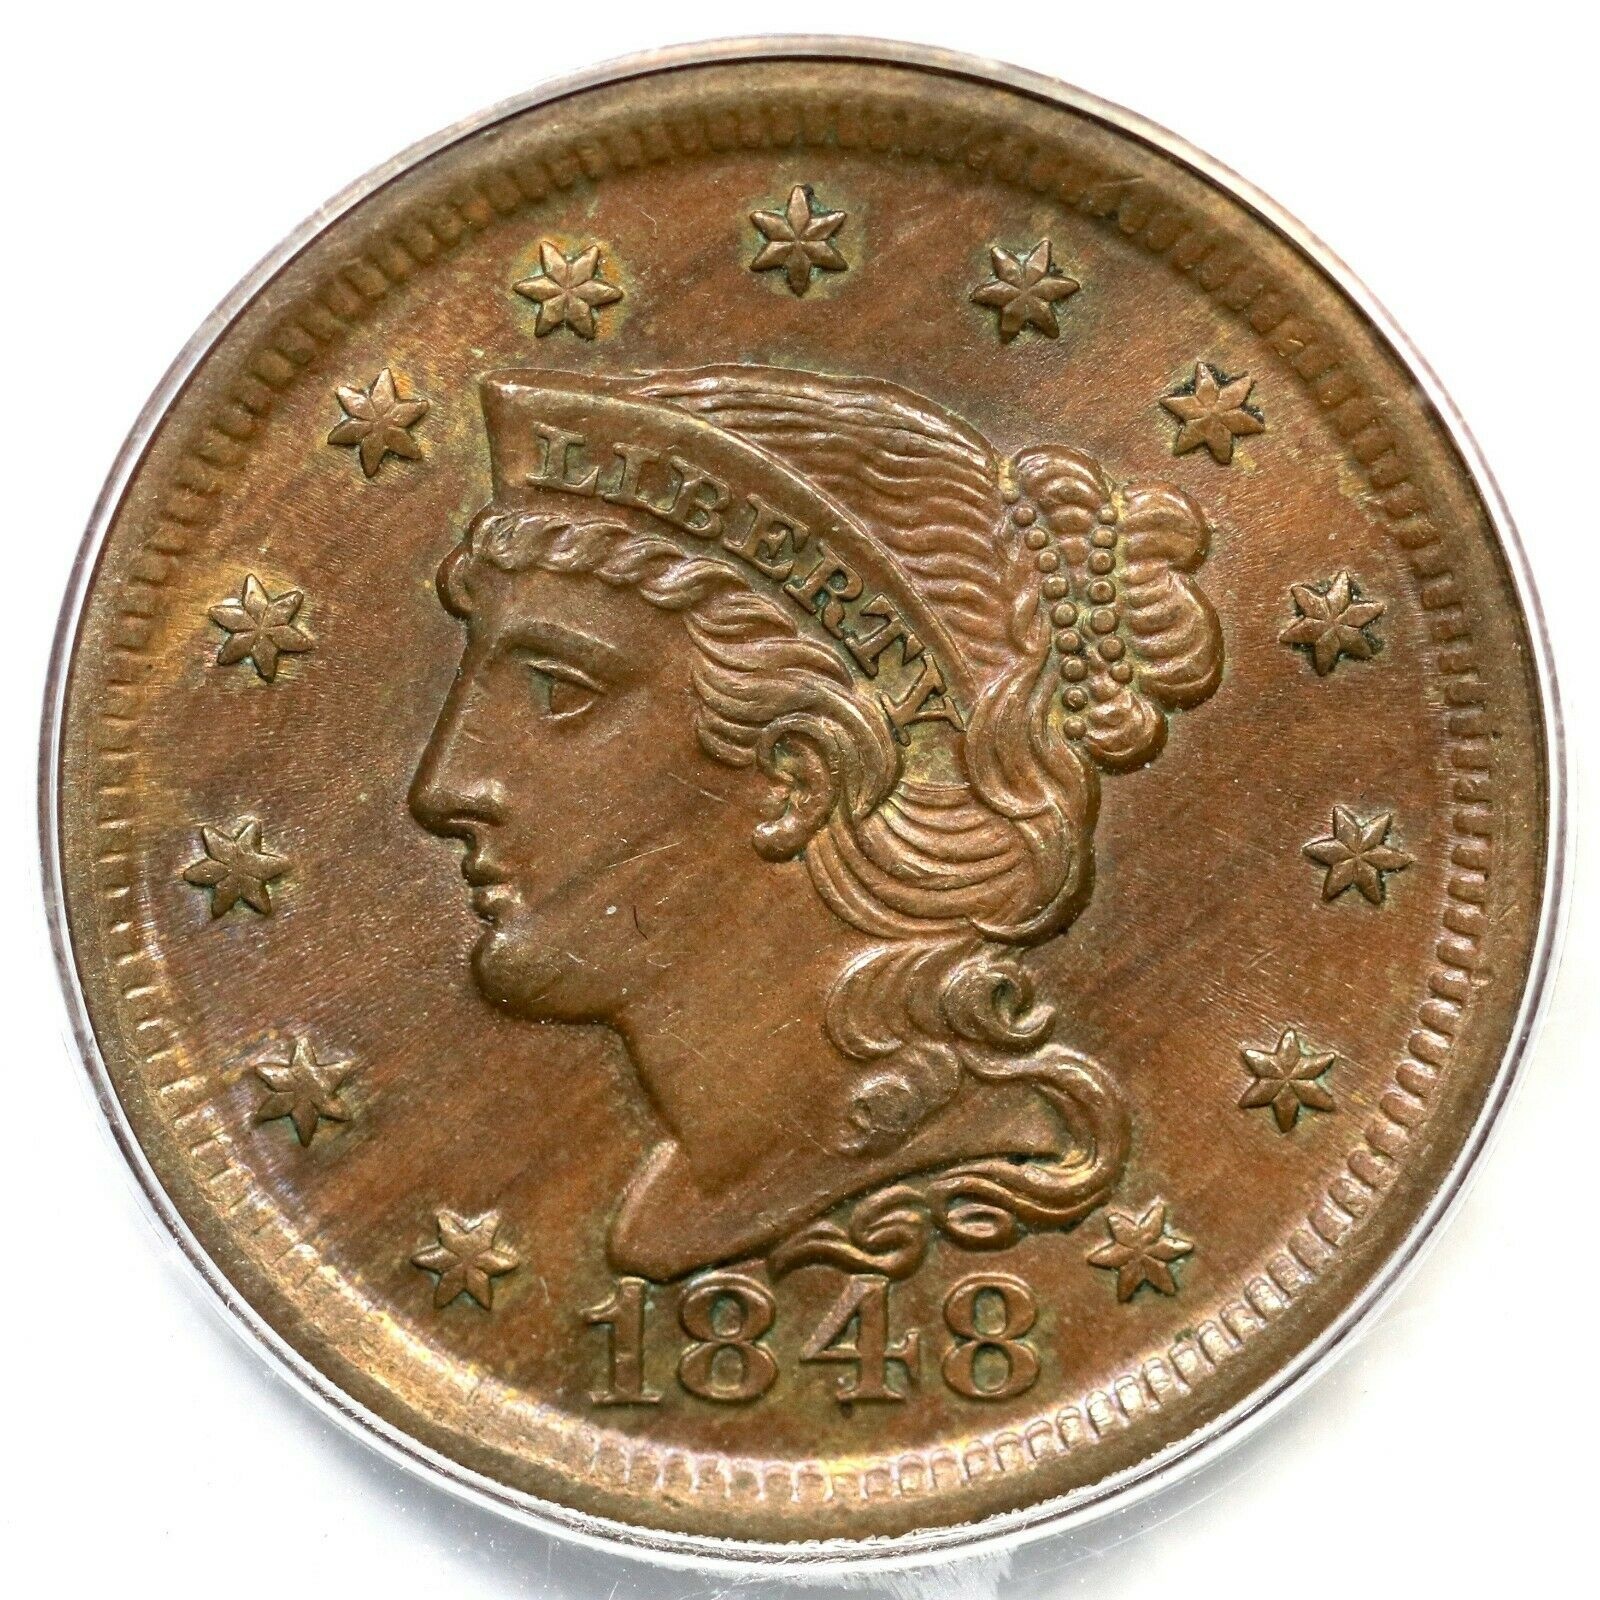 【極美品/品質保証書付】 アンティークコイン 硬貨 1848 N-35 R-2 PCGS MS 63 BN Braided Hair Large Cent Coin 1c [送料無料] #oct-wr-8790-2245：金銀プラチナ ワールドリソース